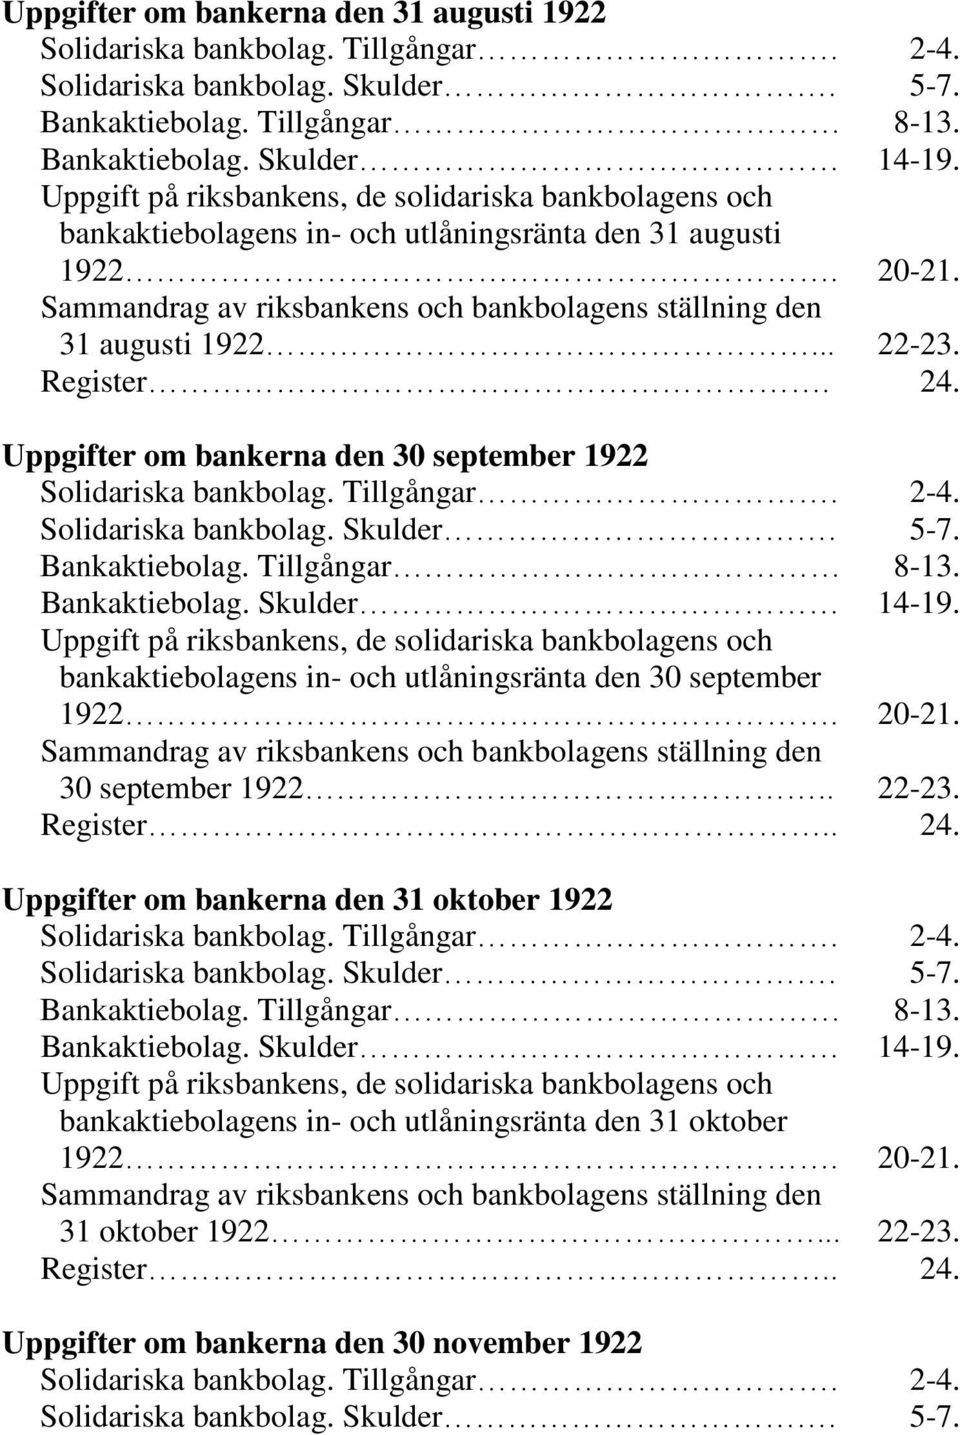 .. 22-23. Register. 24. Uppgifter om bankerna den 30 september 1922 Solidariska bankbolag. Tillgångar. 2-4. Solidariska bankbolag. Skulder. 5-7. Bankaktiebolag. Tillgångar 8-13. Bankaktiebolag. Skulder 14-19.